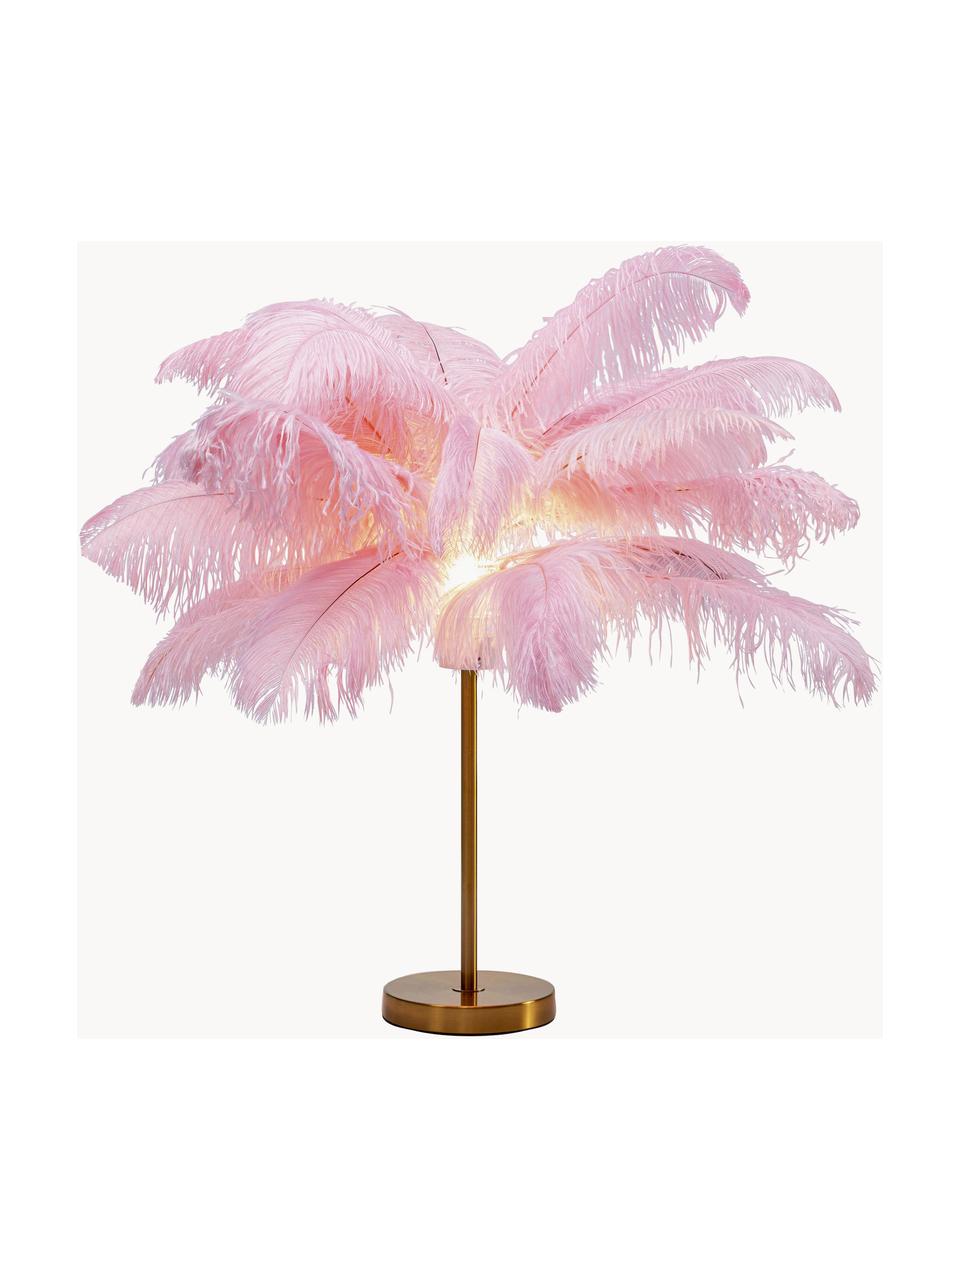 Grosse Tischlampe Feather Palm, Lampenschirm: Straussenfedern, Goldfarben, Rosa, Ø 50 x H 60 cm